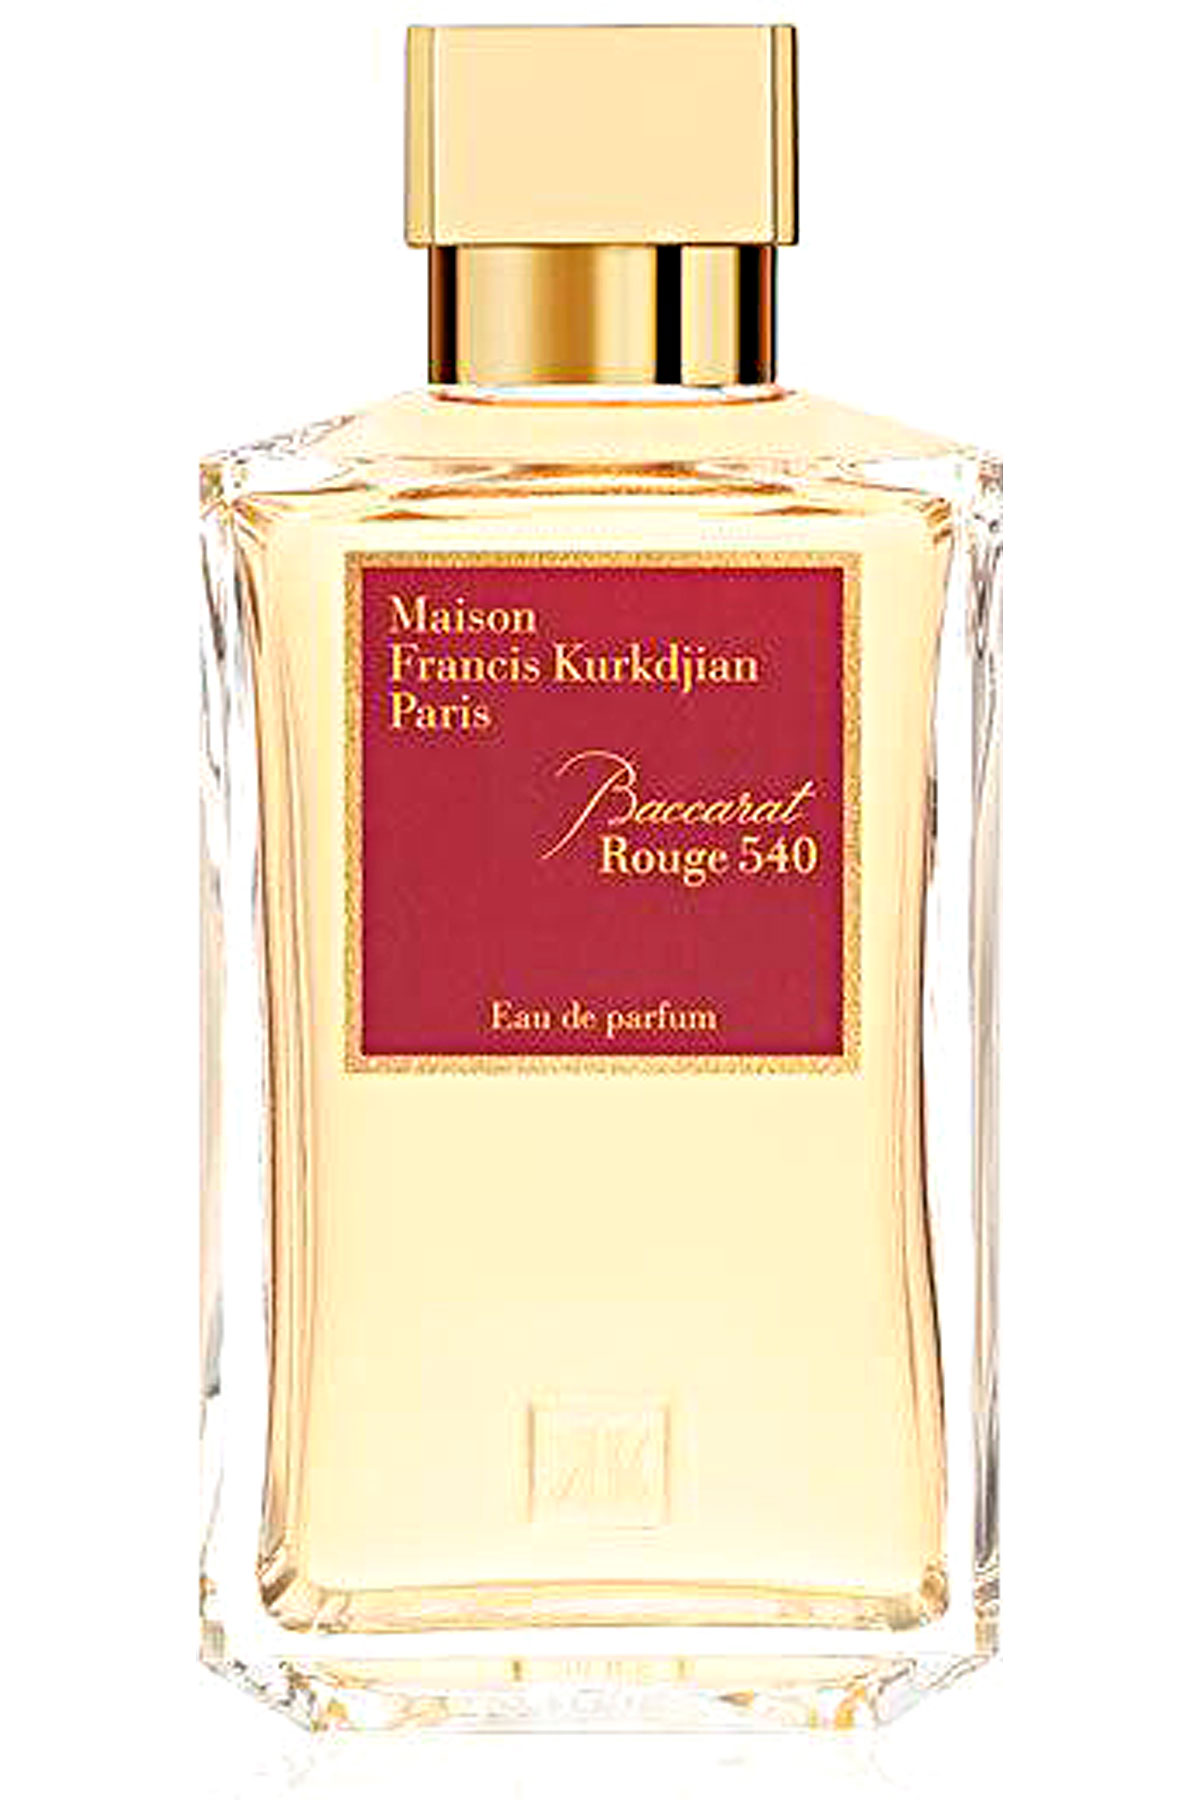 BACCARAT ROUGE 540 - EAU DE PARFUM - 200 ML, Womens Fragrances Maison ...